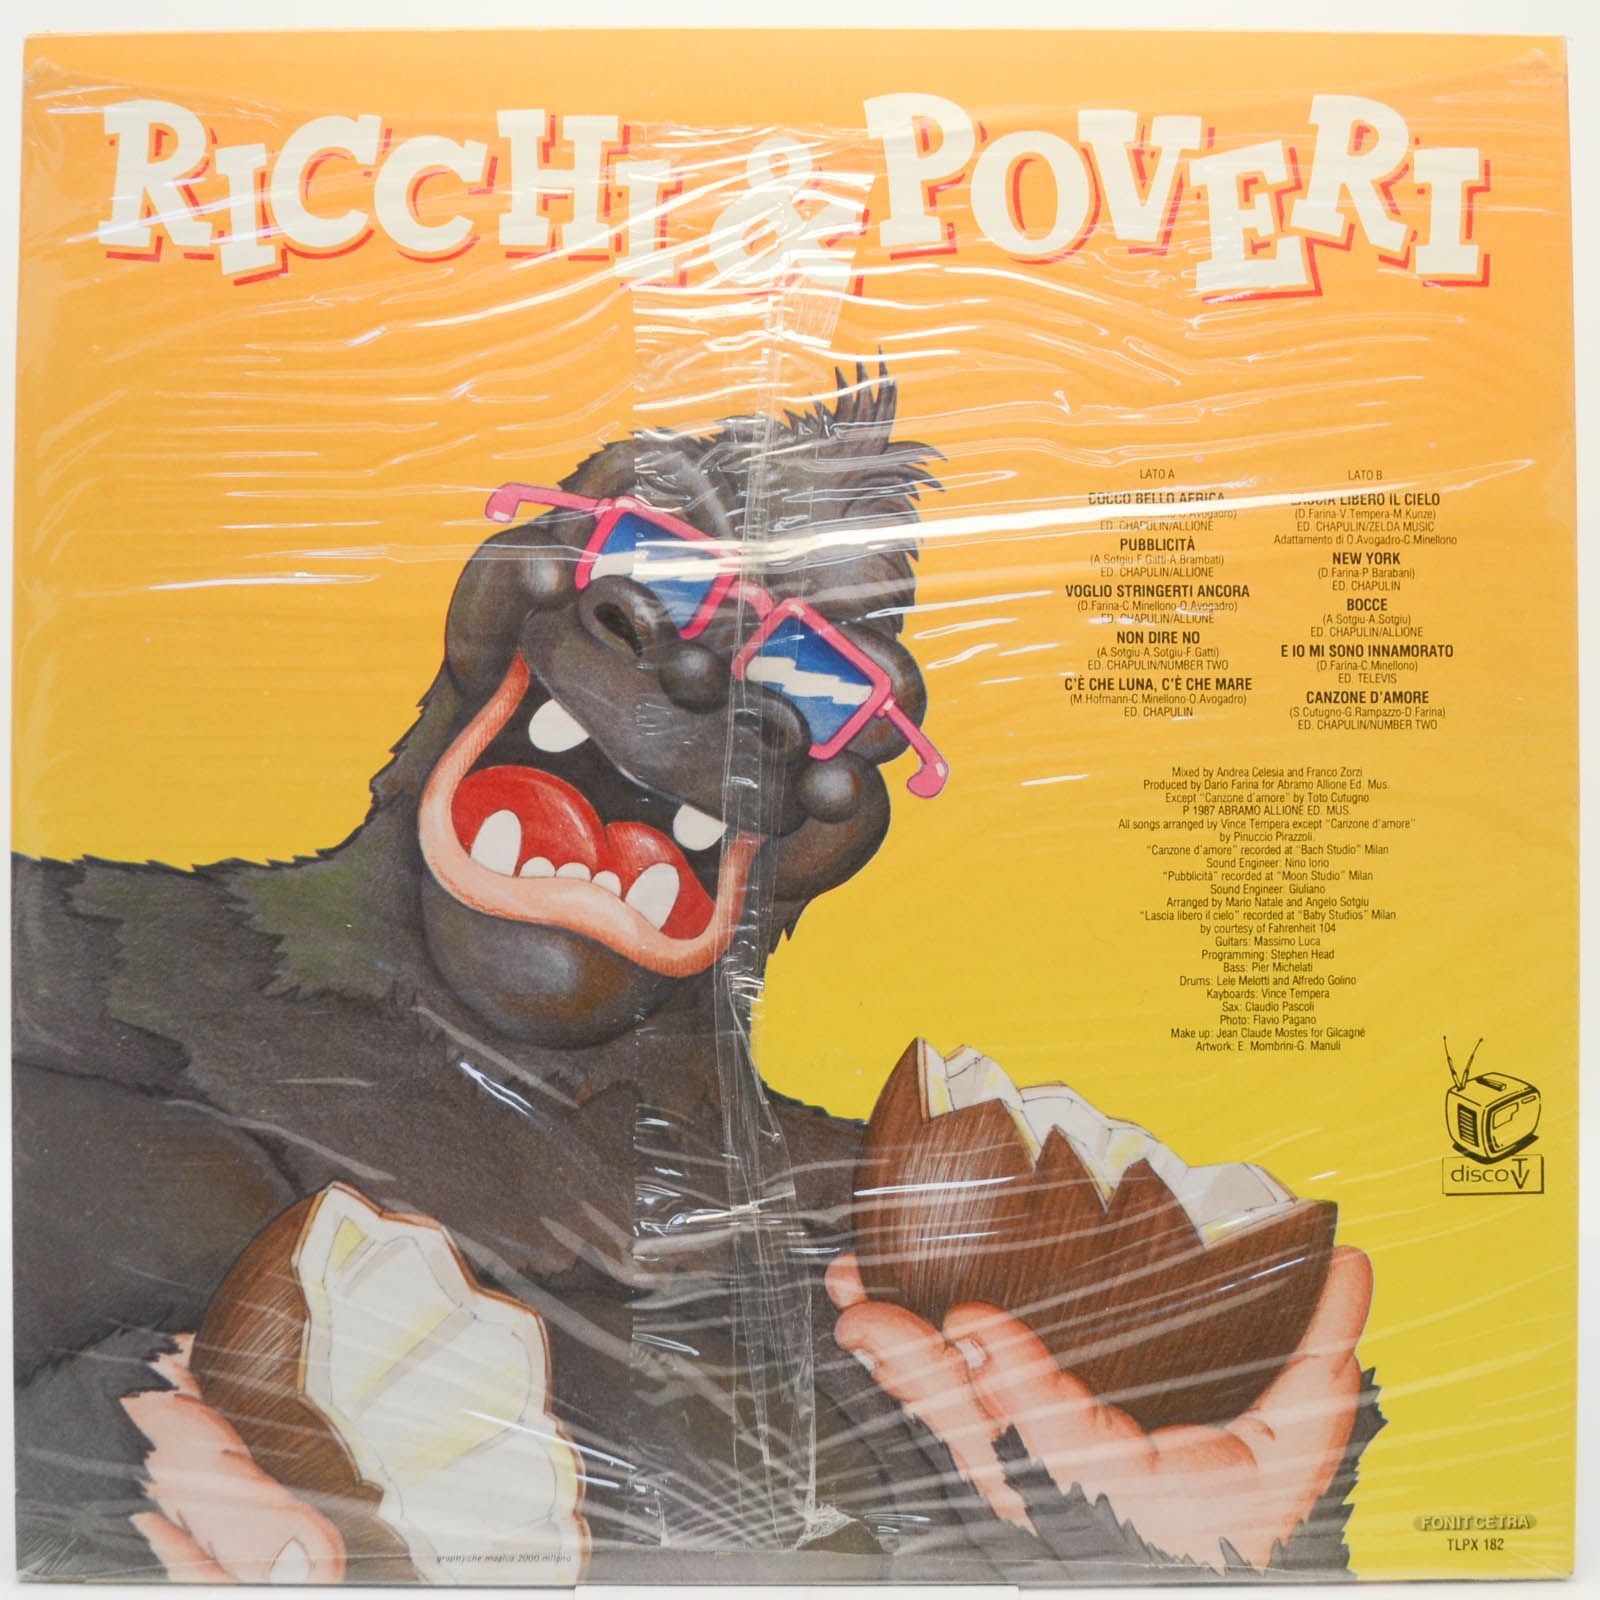 Ricchi E Poveri — Pubblicità (1-st, Italy), 1987